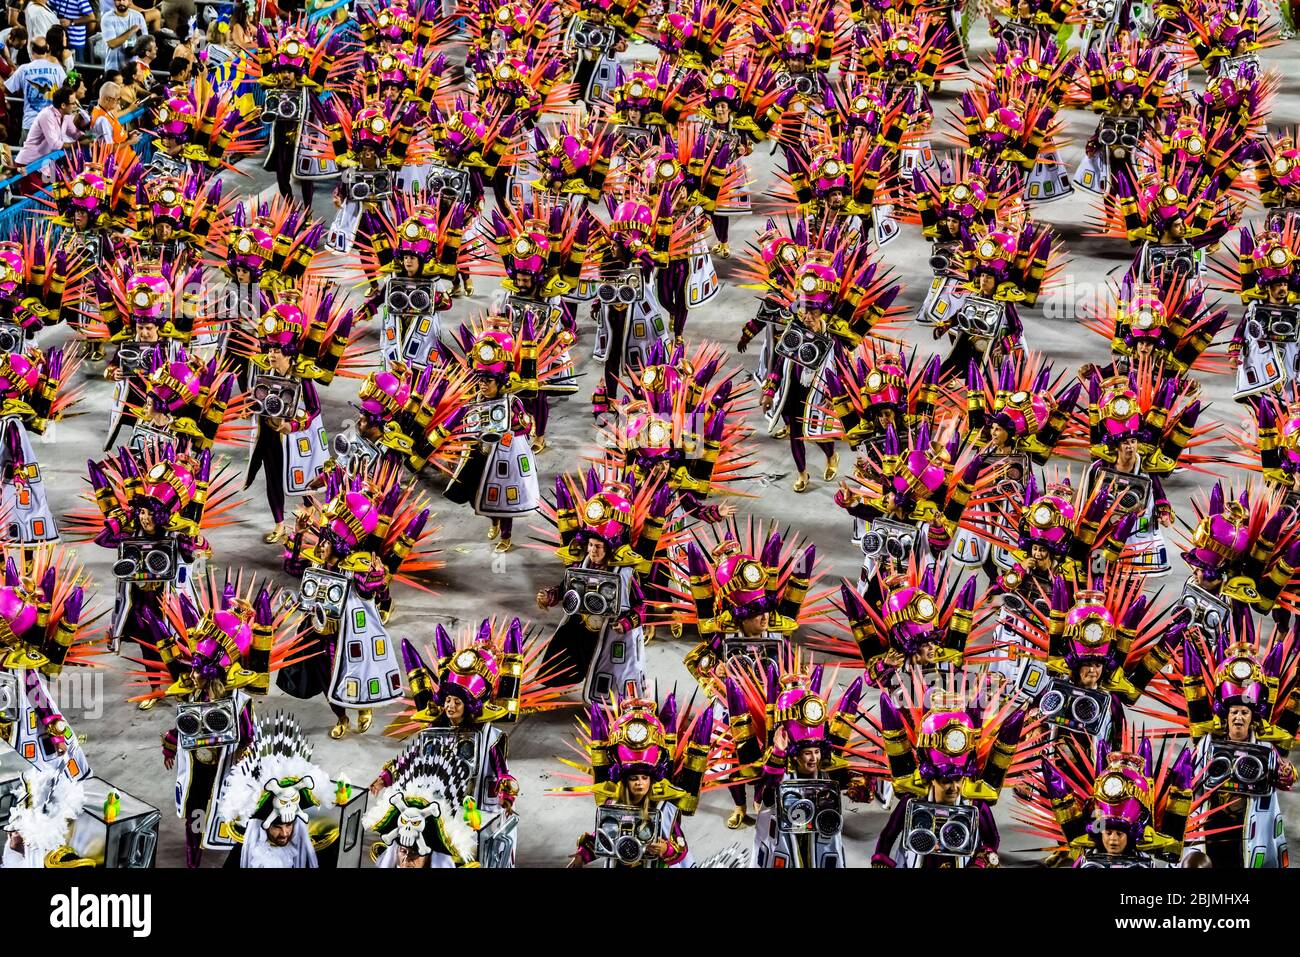 Carnaval parade of GRES Sao Clemente samba school in the Sambadrome, Rio de Janeiro, Brazil. Stock Photo